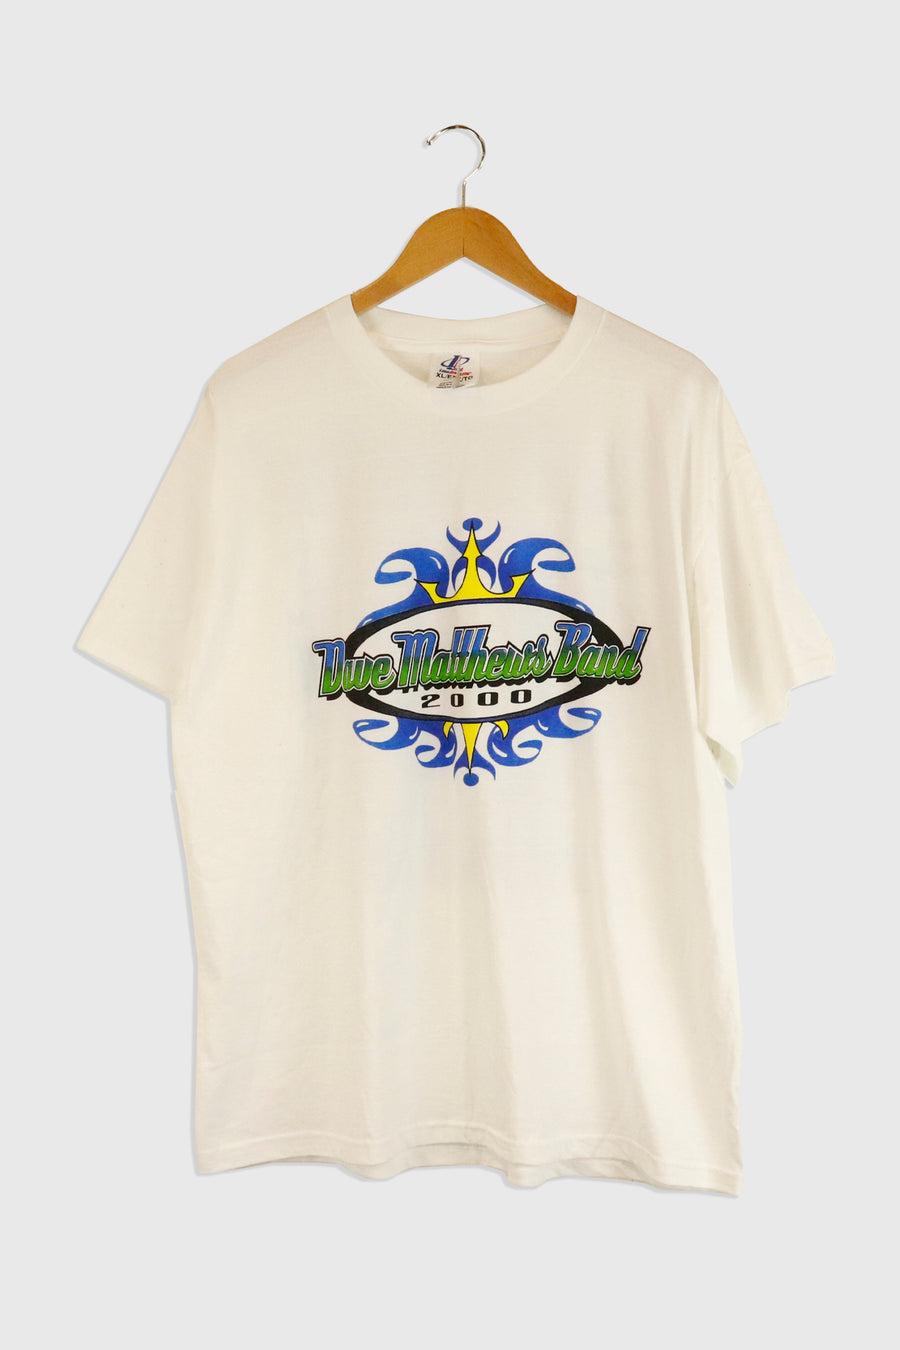 Vintage 2000 Dave Matthews Band Tour T Shirt Sz XL